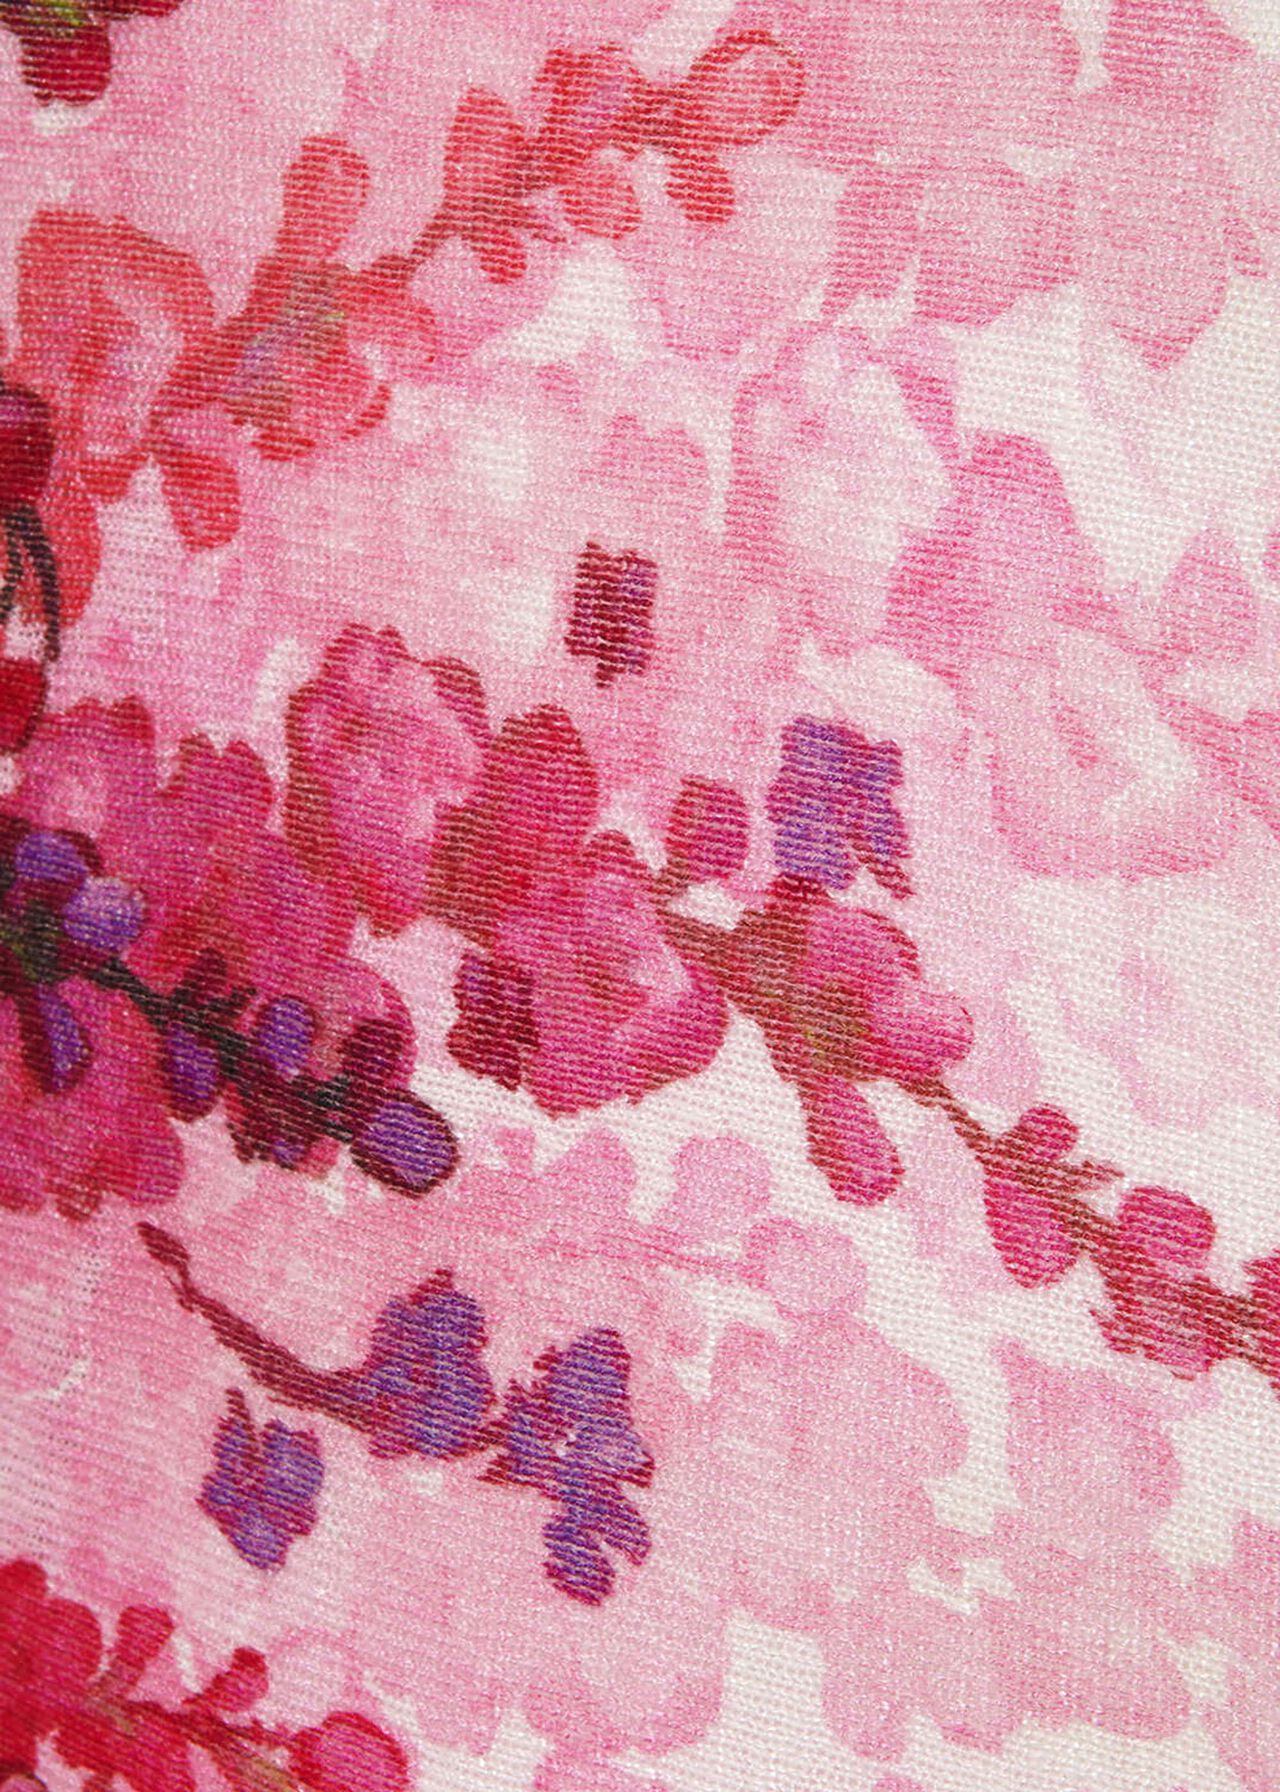 Ferne Floral Print Knit Top